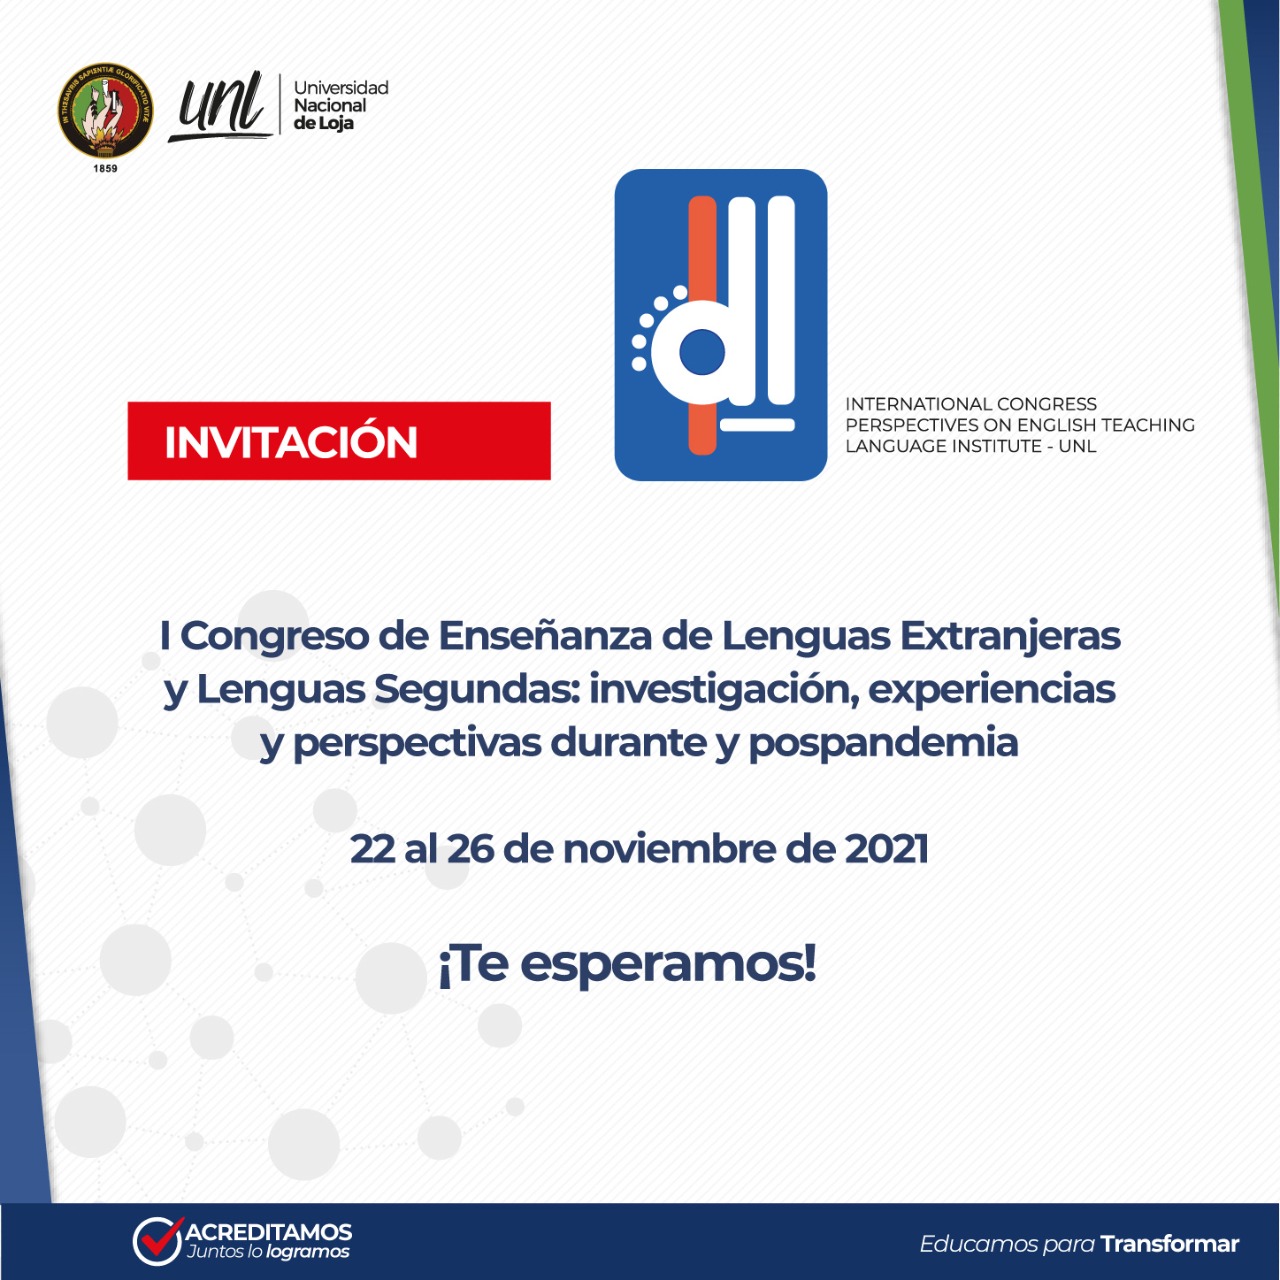  UNL invita al primer congreso científico de enseñanza de inglés 